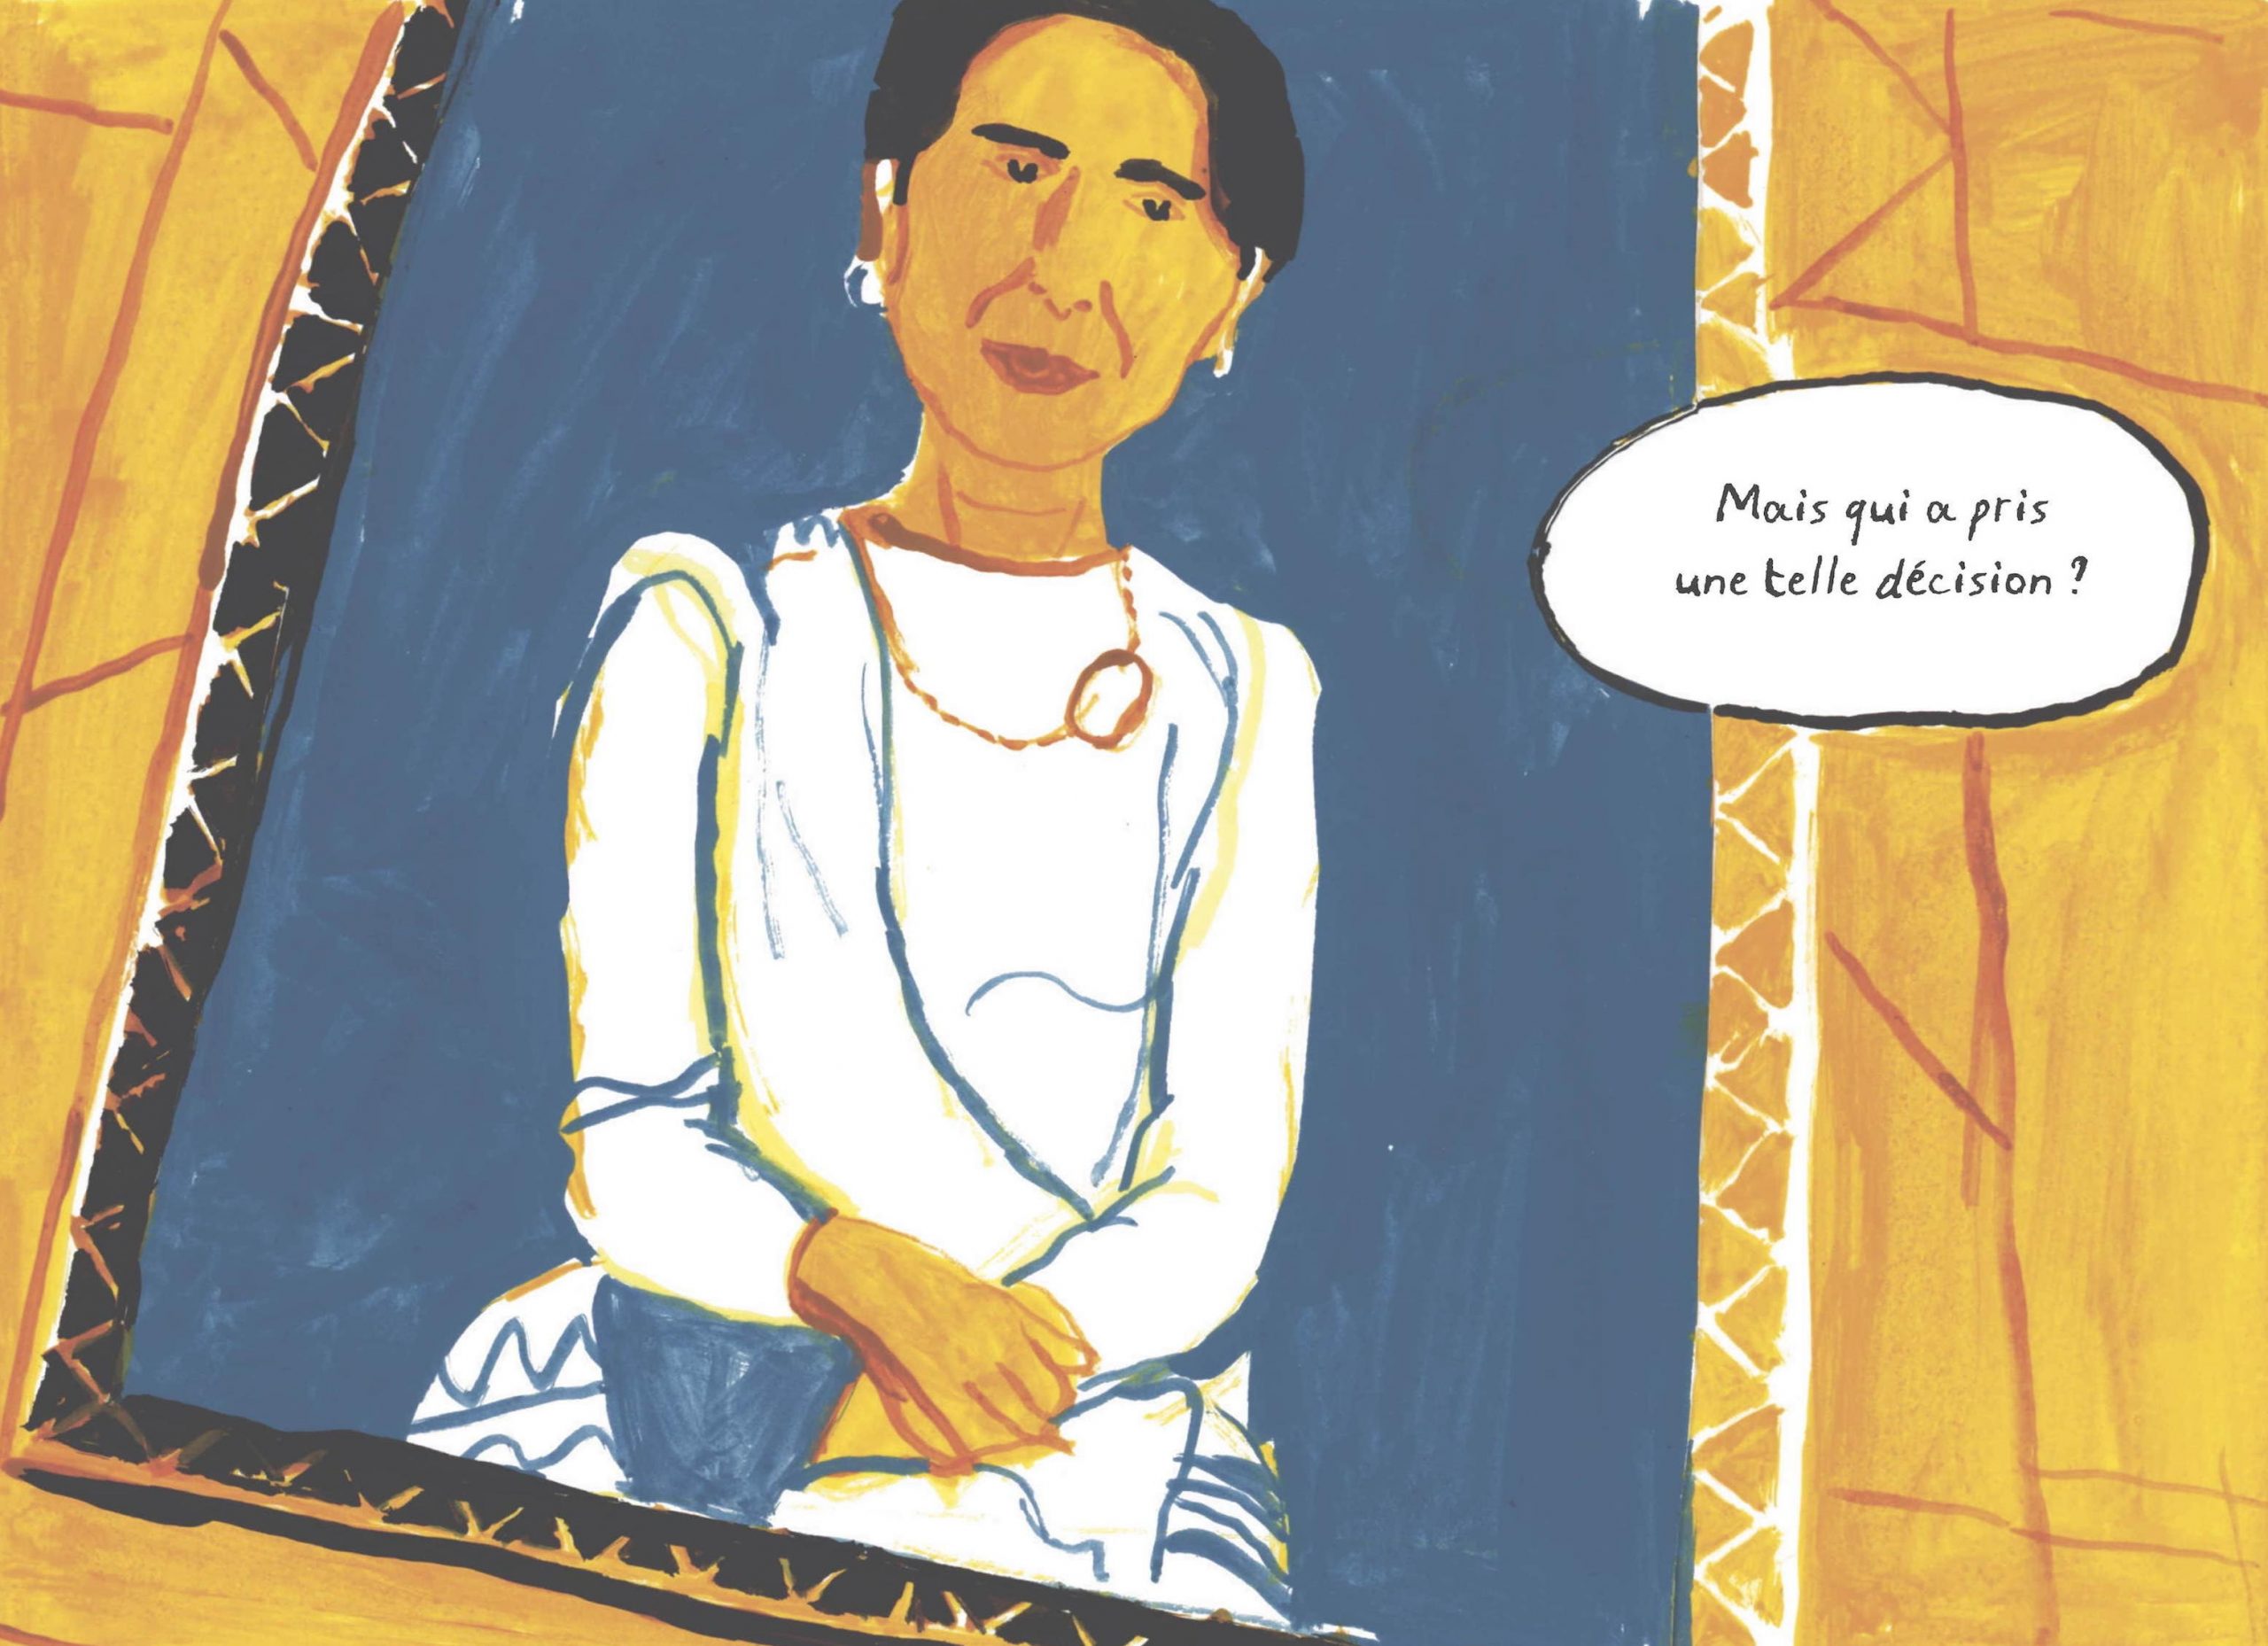 Extrait de la bande dessinée "Aung San Suu Kyi, Rohingya et extrémistes bouddhistes", scénario Frédéric Debomy, dessin Benoît Guillaume, Massot Editions. (Copryright : Massot Editions)